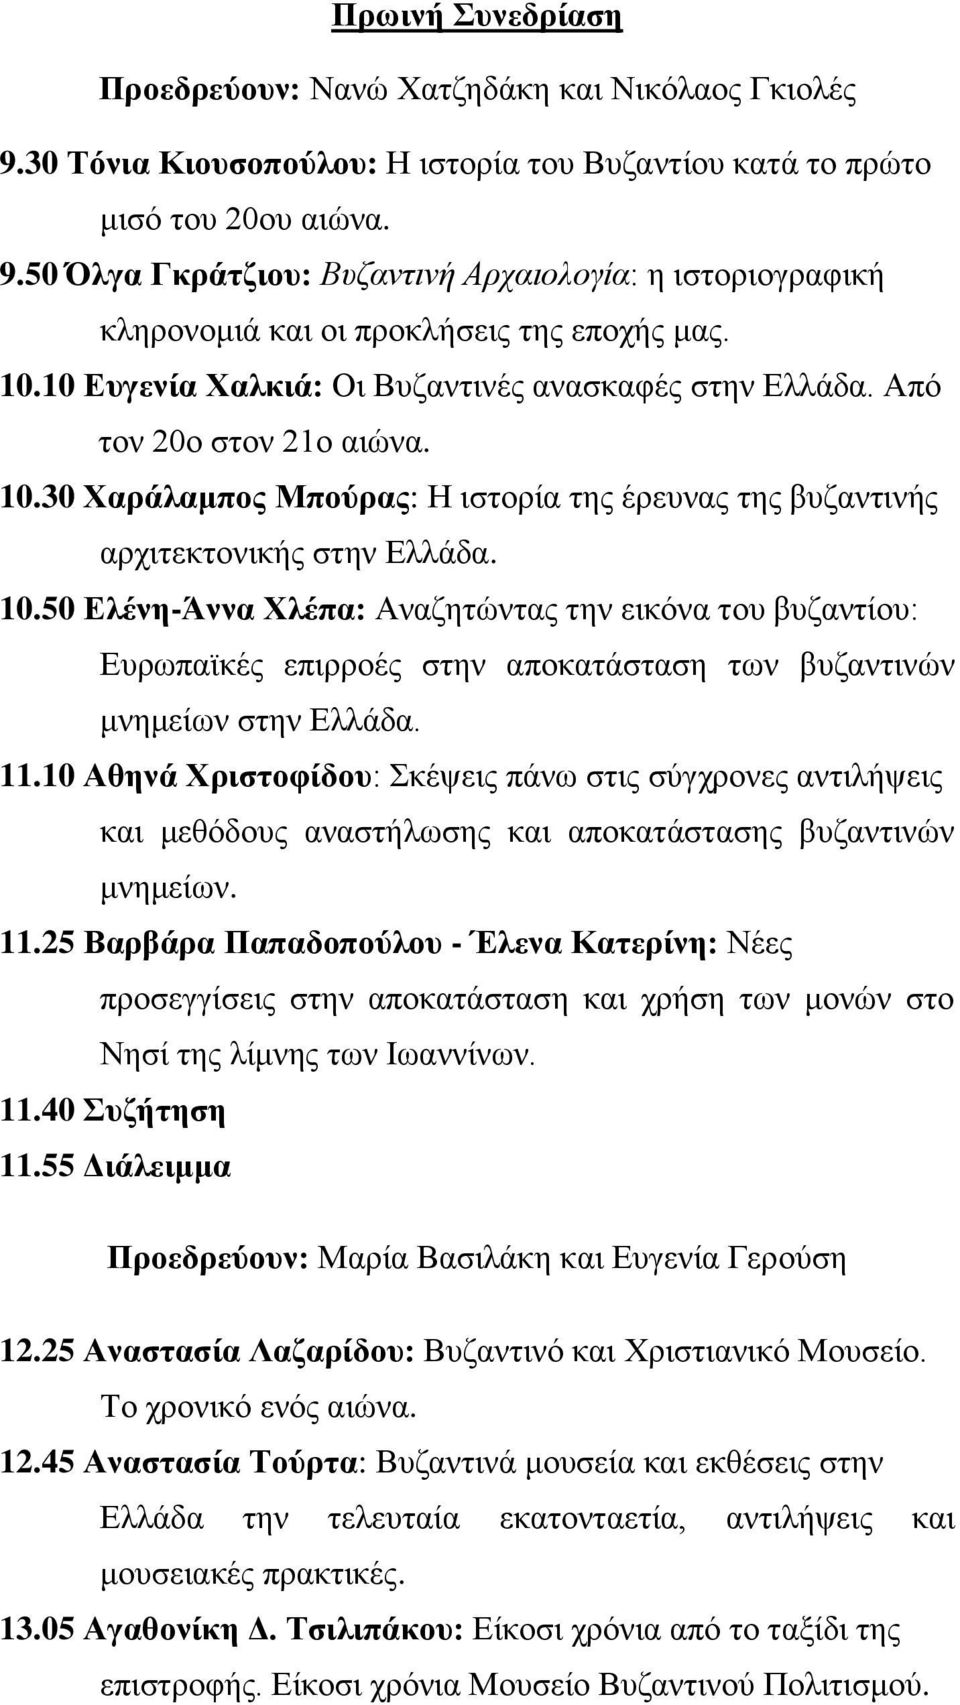 30 Χαράλαμπος Μπούρας: Η ιστορία της έρευνας της βυζαντινής αρχιτεκτονικής στην Ελλάδα. 10.